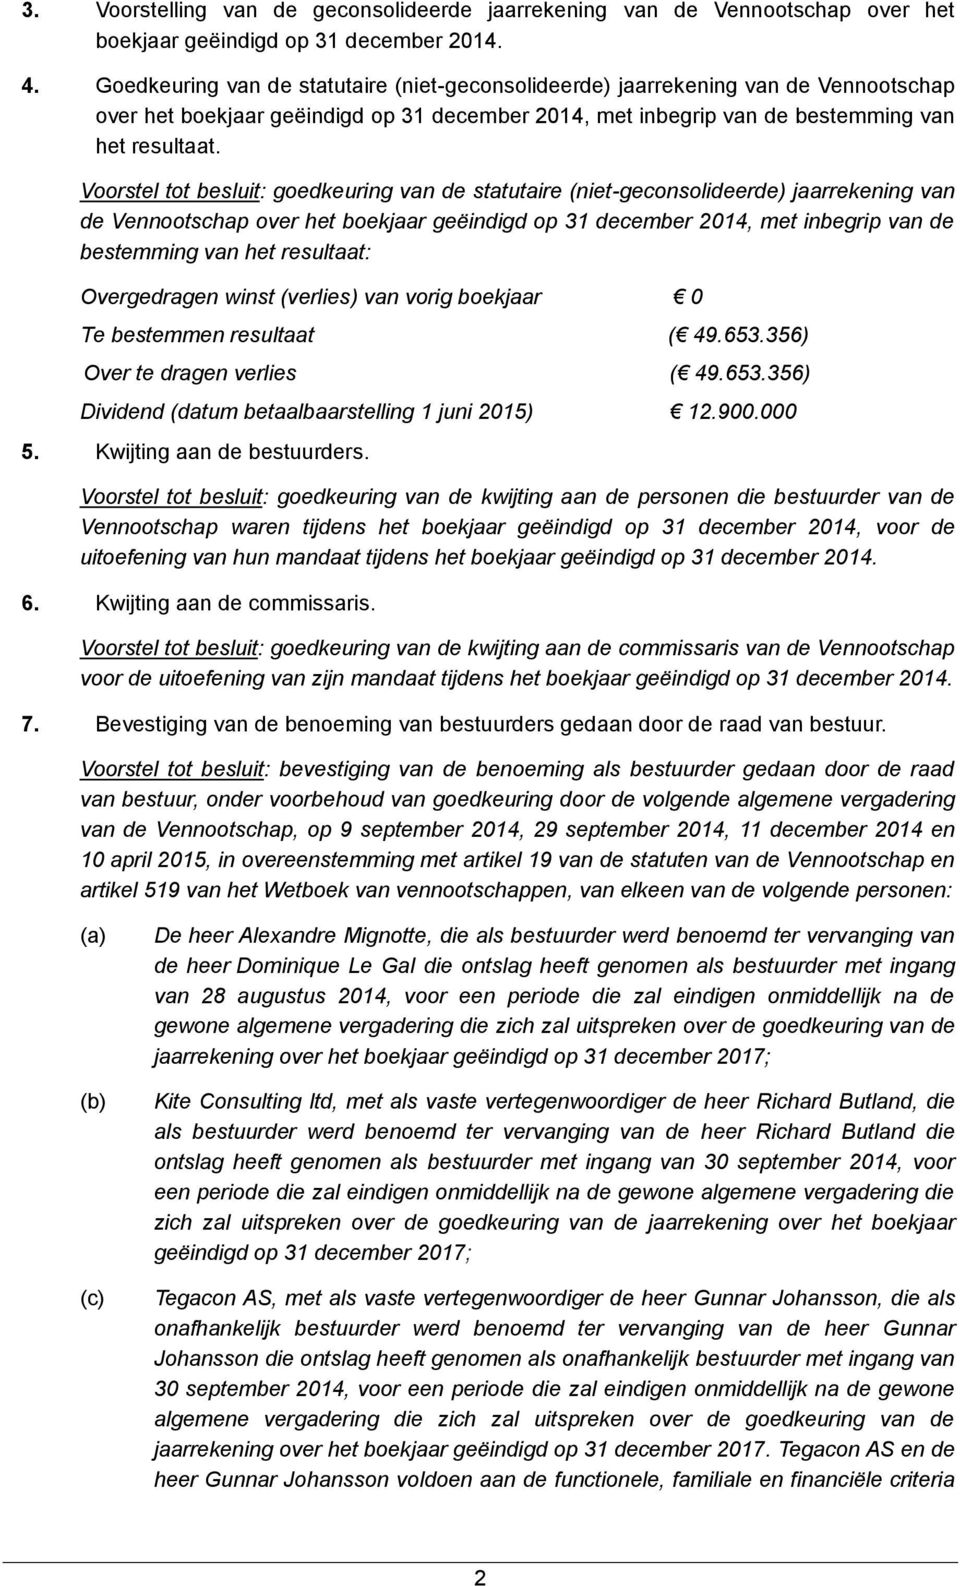 Voorstel tot besluit: goedkeuring van de statutaire (niet-geconsolideerde) jaarrekening van de Vennootschap over het boekjaar geëindigd op 31 december 2014, met inbegrip van de bestemming van het